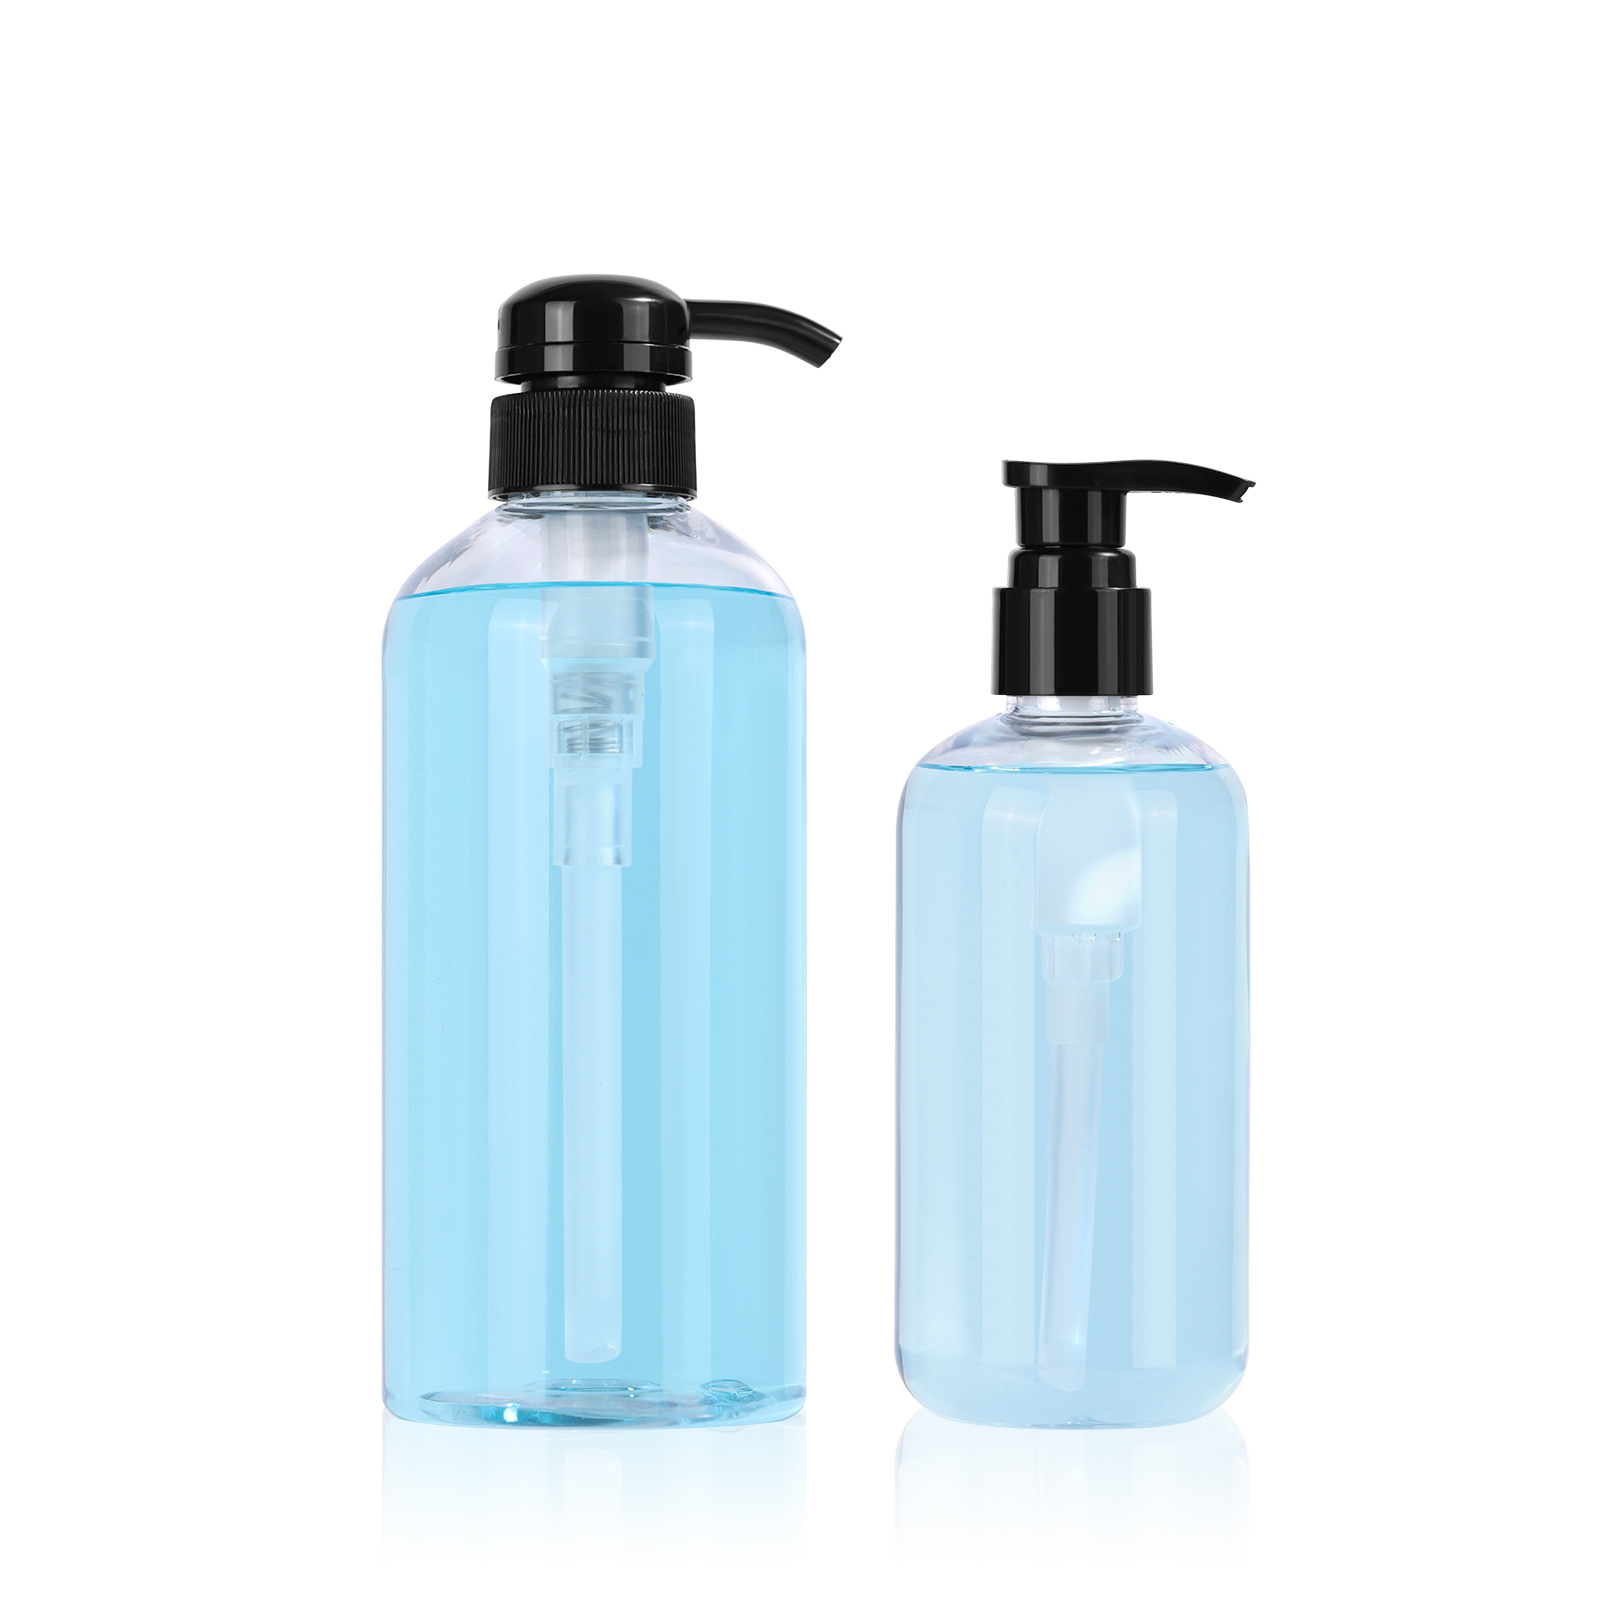 factory wholesale 200 ml/ 300ml empty clear PET plastic hand sanitizer bottle with flip top cap